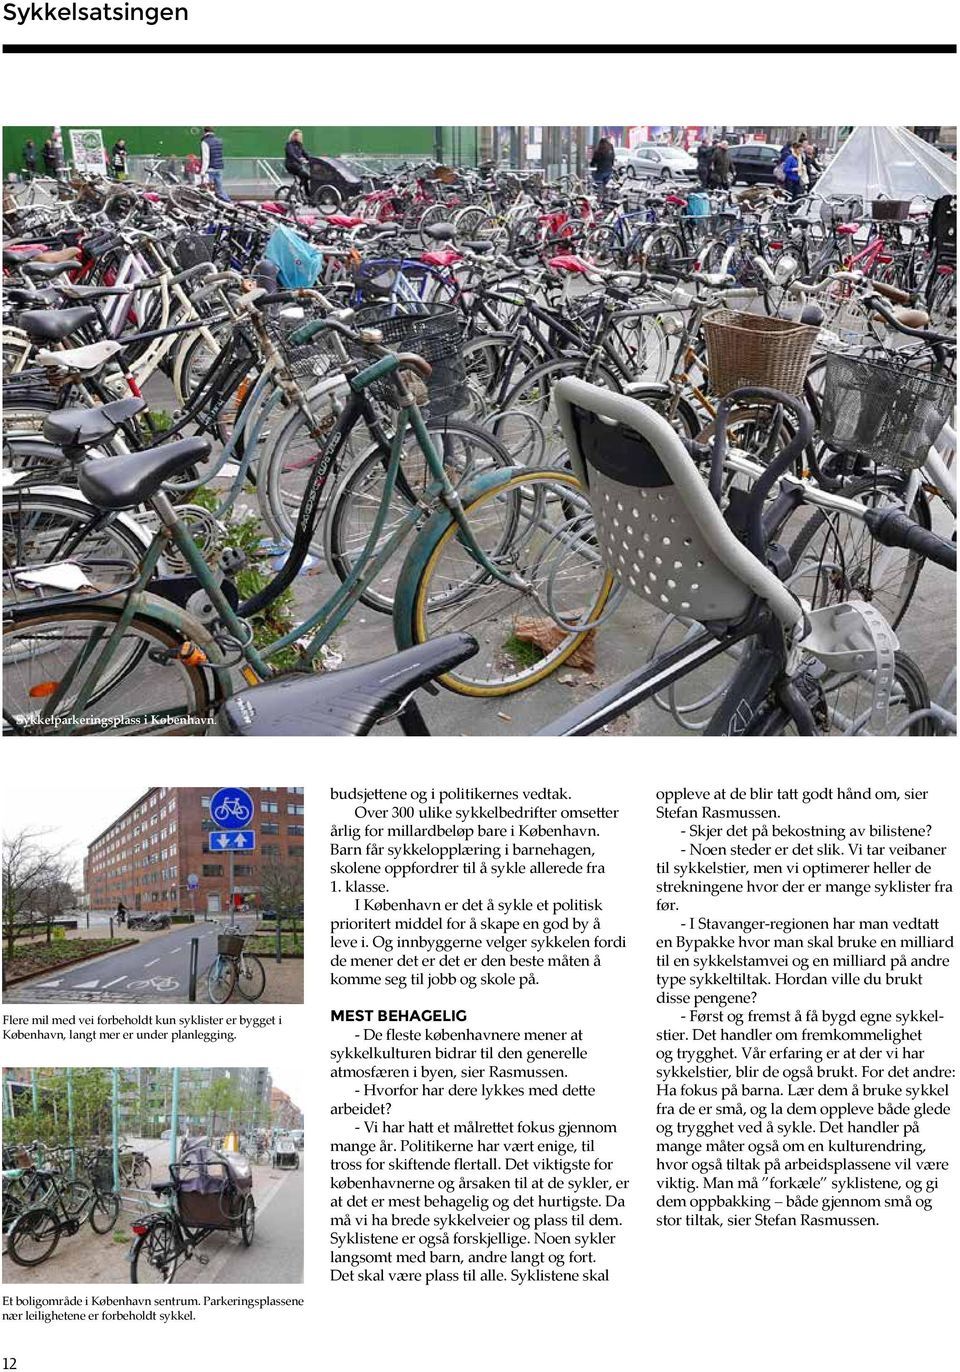 Barn får sykkelopplæring i barnehagen, skolene oppfordrer til å sykle allerede fra 1. klasse. I København er det å sykle et politisk prioritert middel for å skape en god by å leve i.